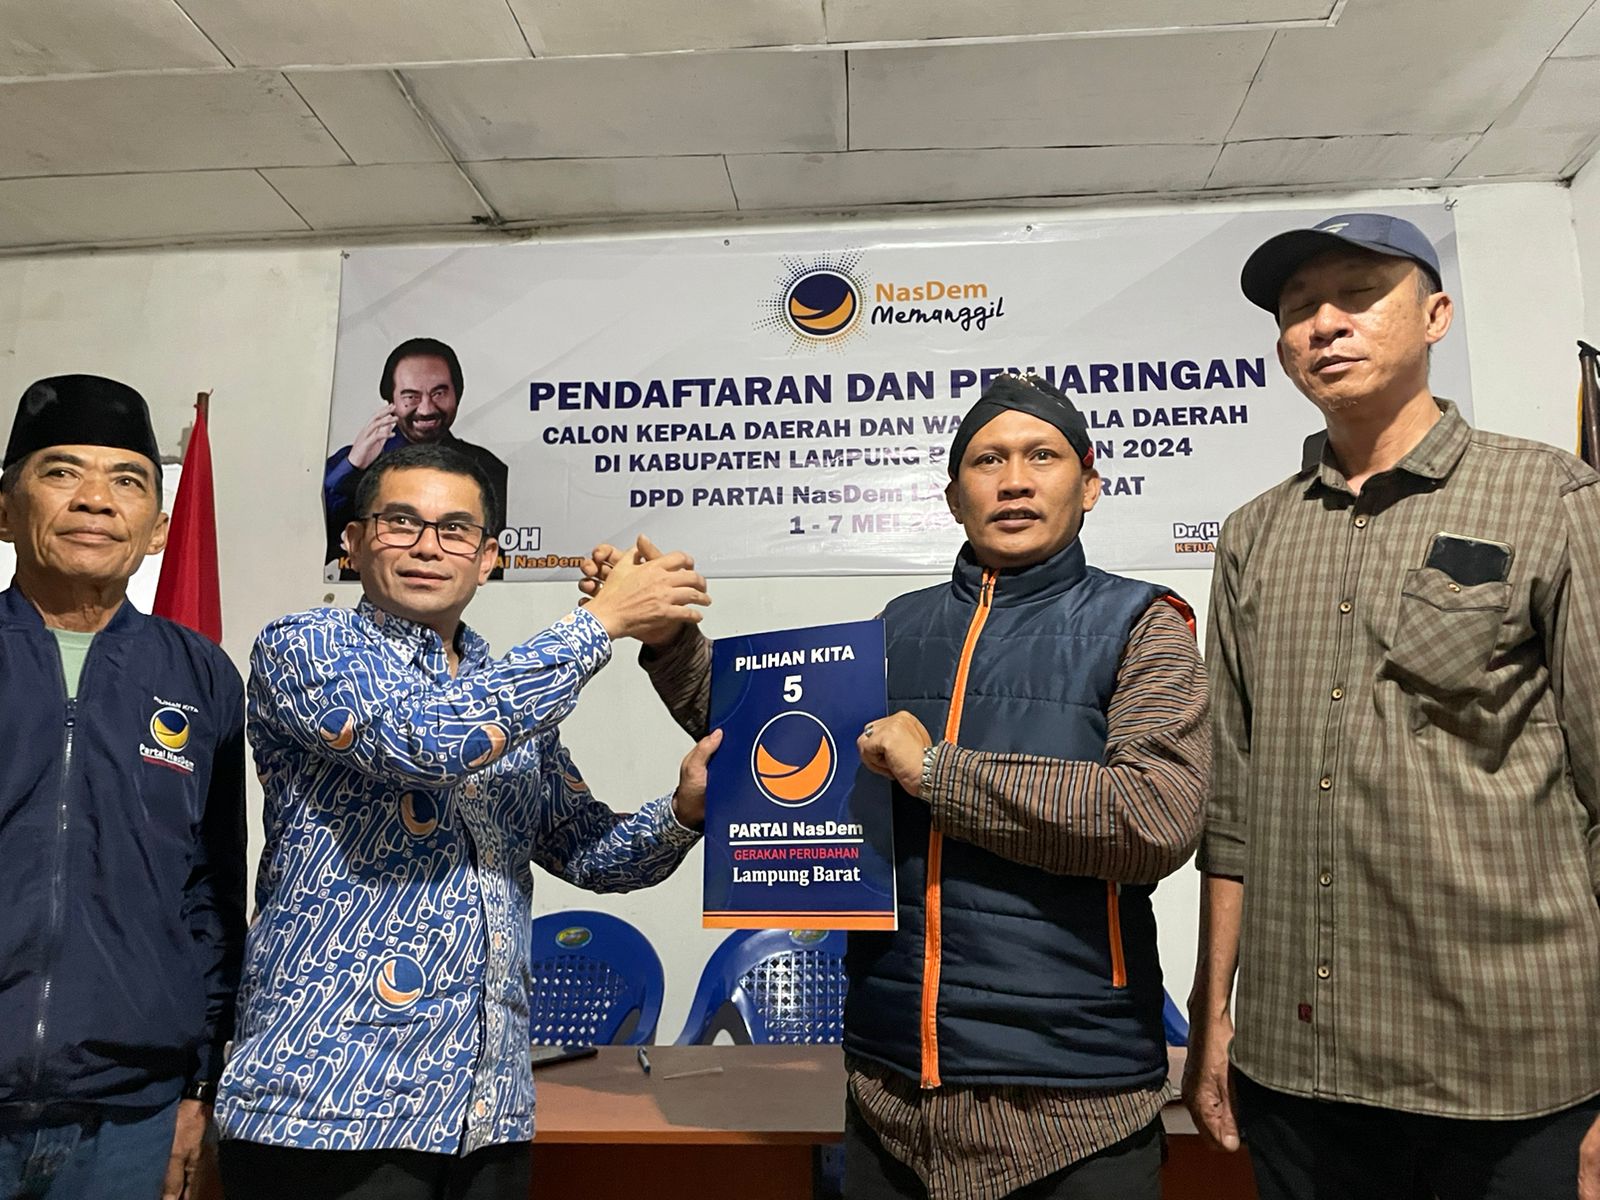 Penjaringan Balon Kada NasDem, Bambang dan Adi Utama Kembalikan Berkas Sebagai Balon Wabup